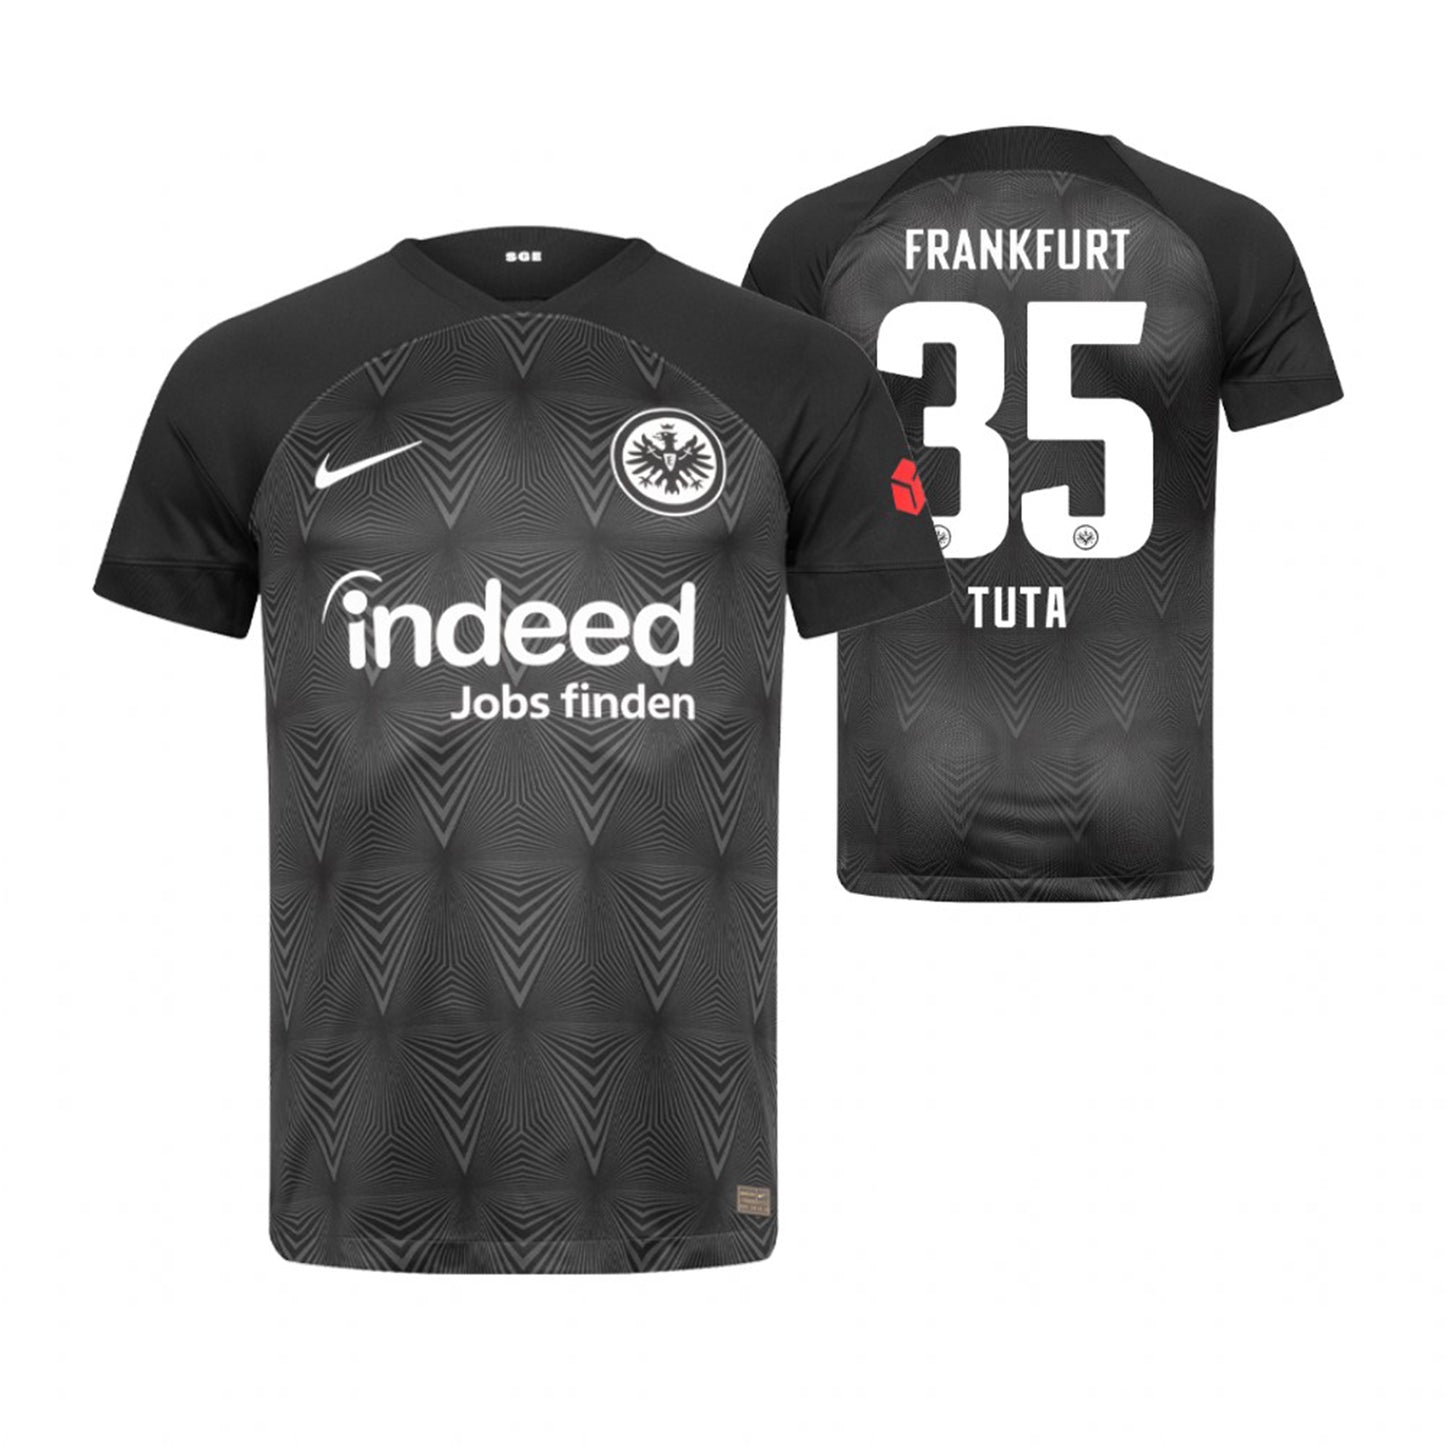 Tuta Eintracht Frankfurt 35 Jersey